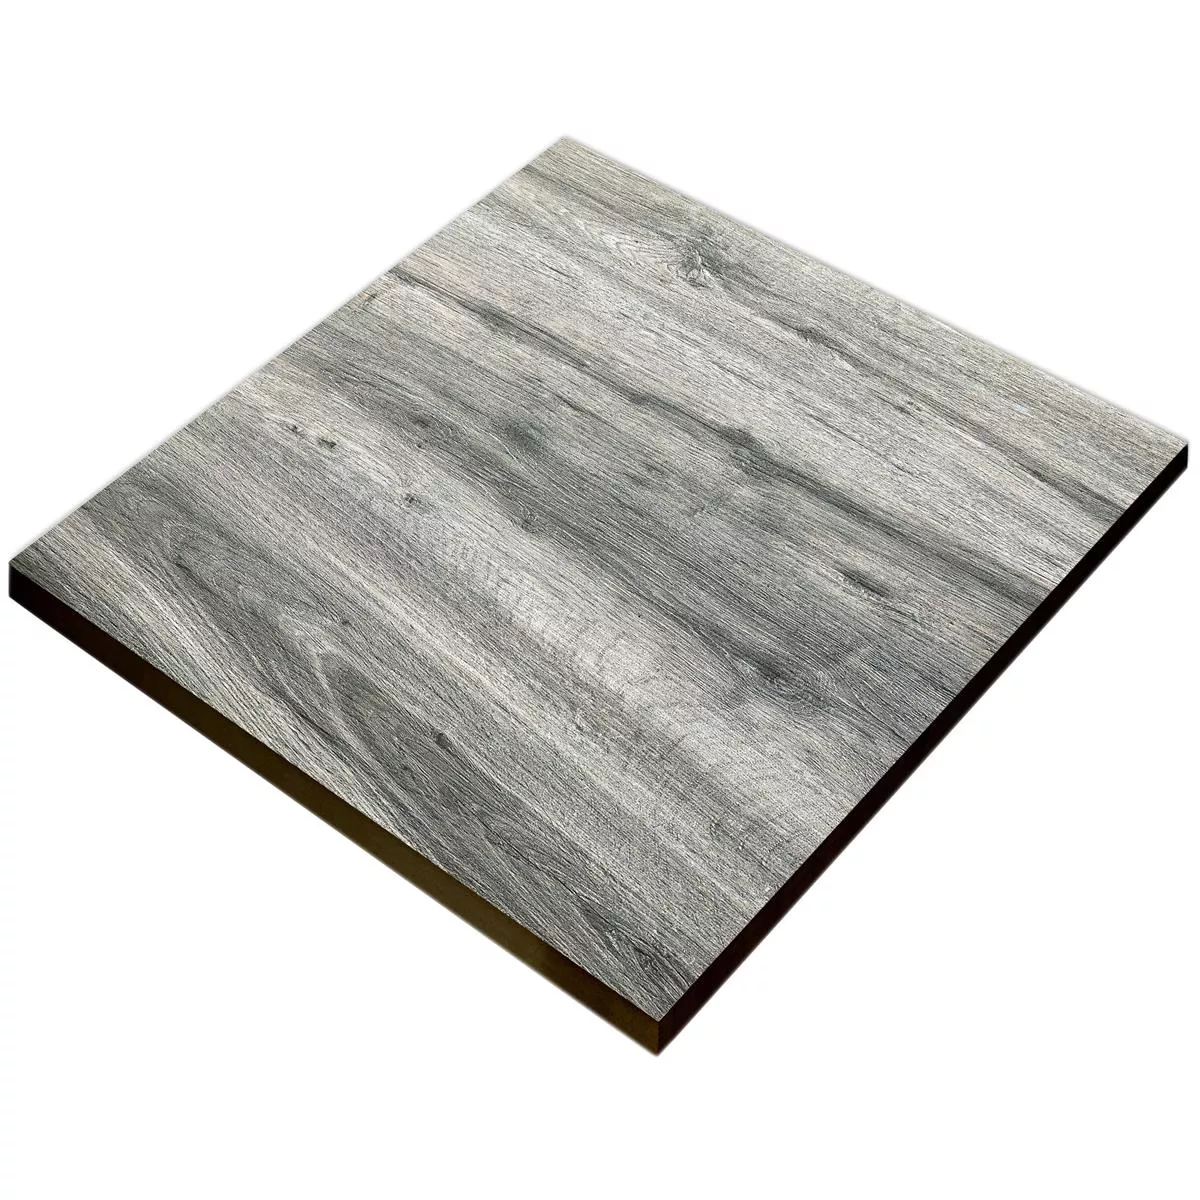 Terrassenplatten Starwood Holzoptik Grey 60x60cm